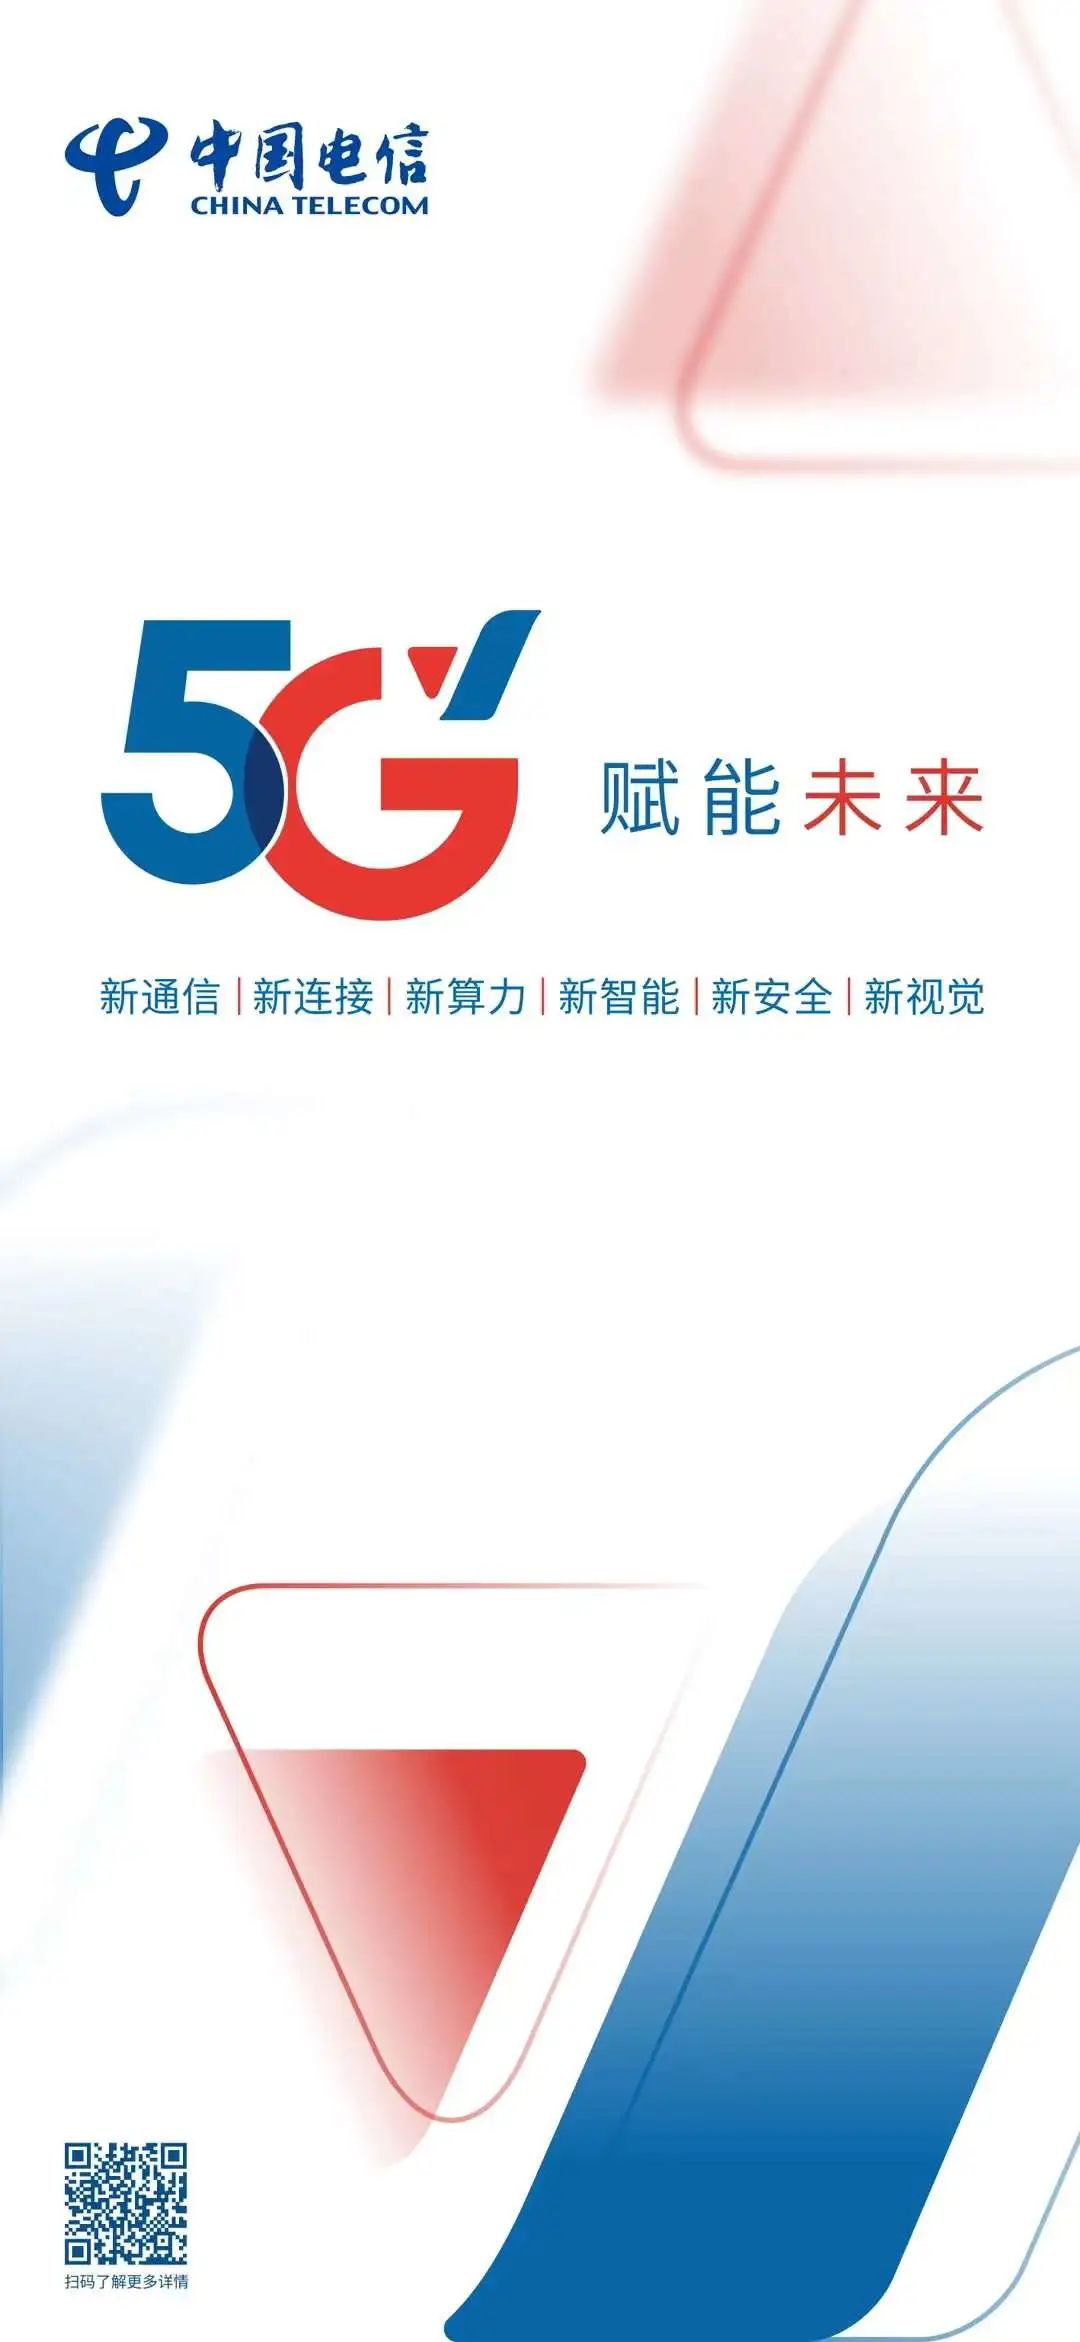 中国电信推出5g焕新品牌:5g新标识,六新应用一同亮相 